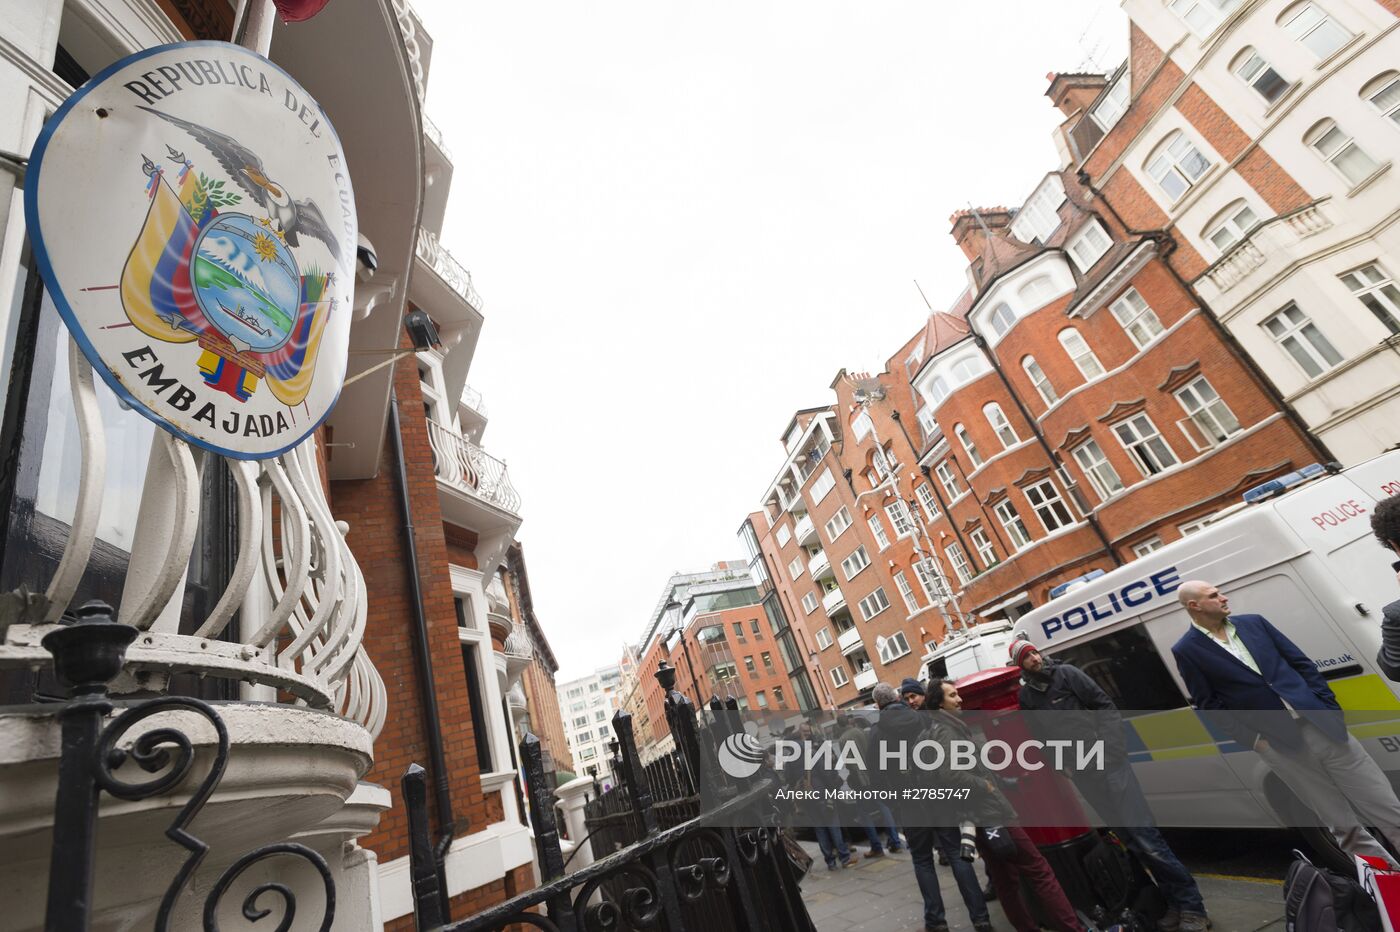 Джулиан Ассанж принял участие в пресс-конференции по видеосвязи из посольства Эквадора в Лондоне